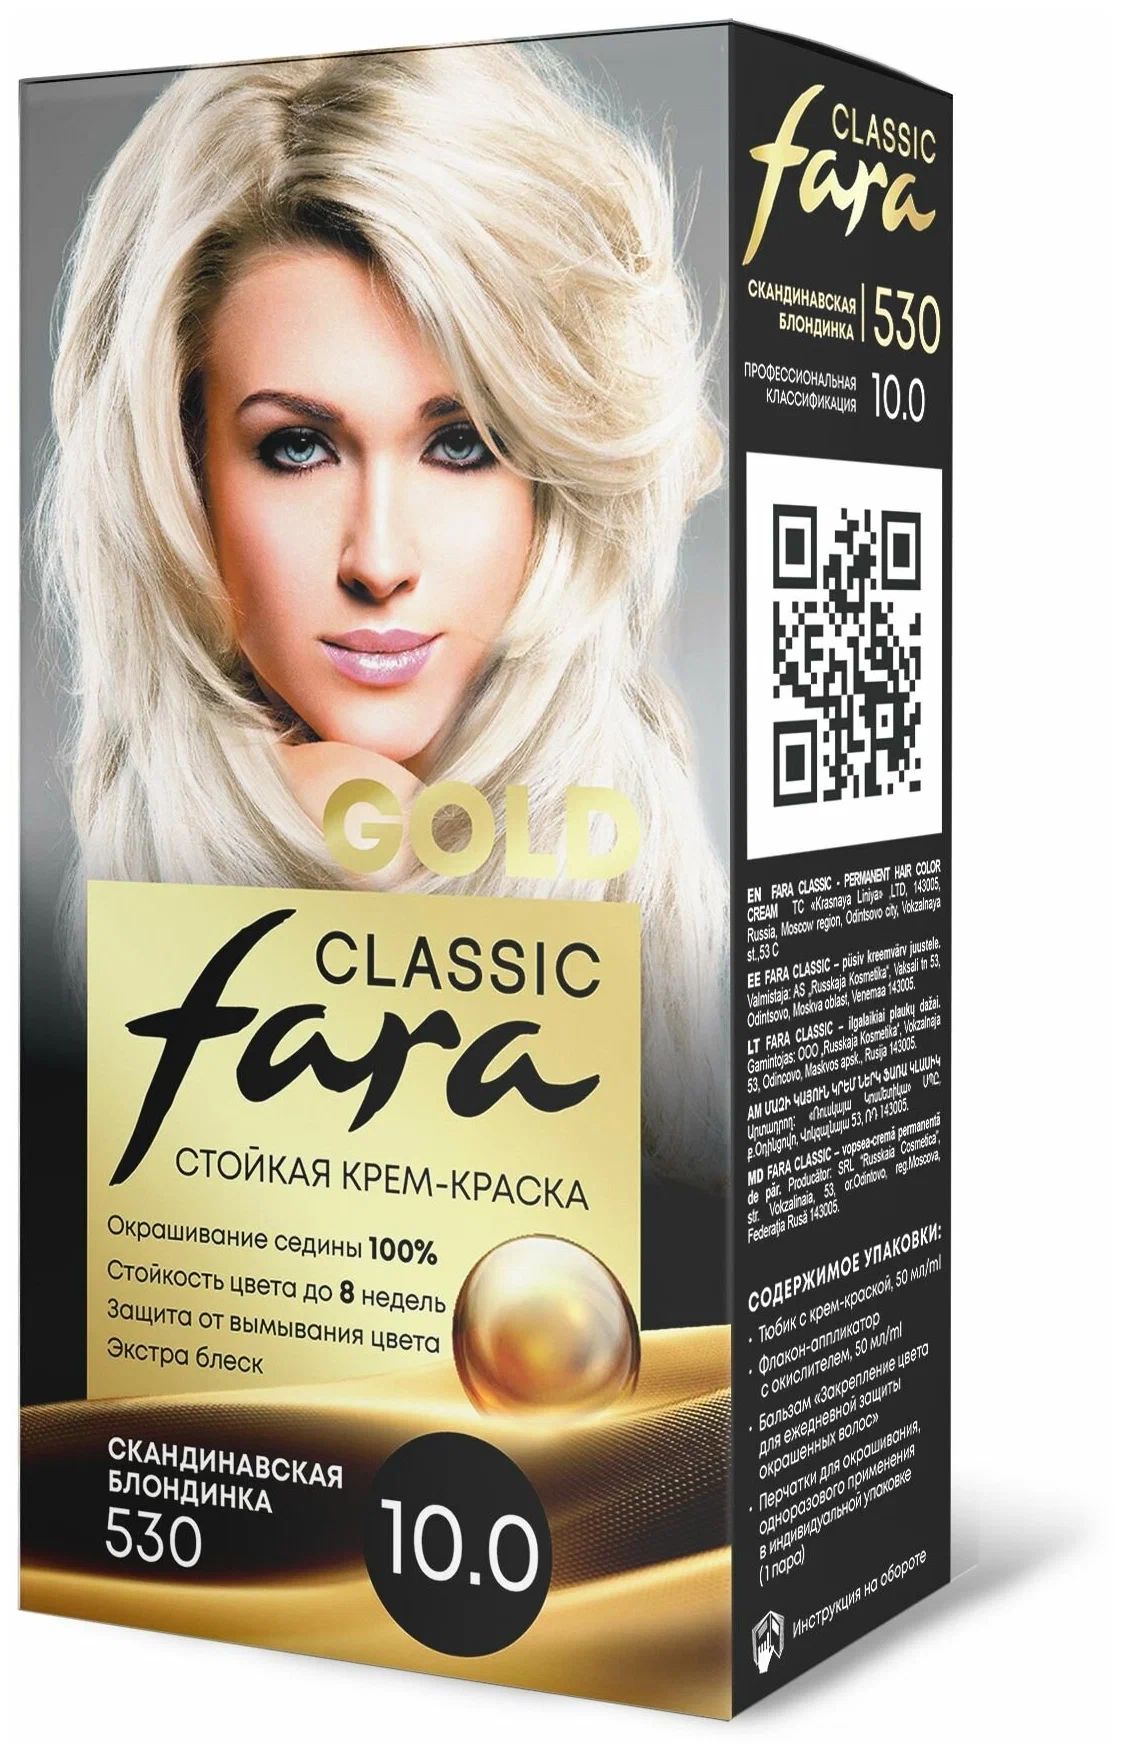 Крем-краска для волос Fara Classic Gold 530 скандинавская блондинка 10.0, 140 г скандинавская мифология миры боги великаны и герои иллюстрированный путеводитель